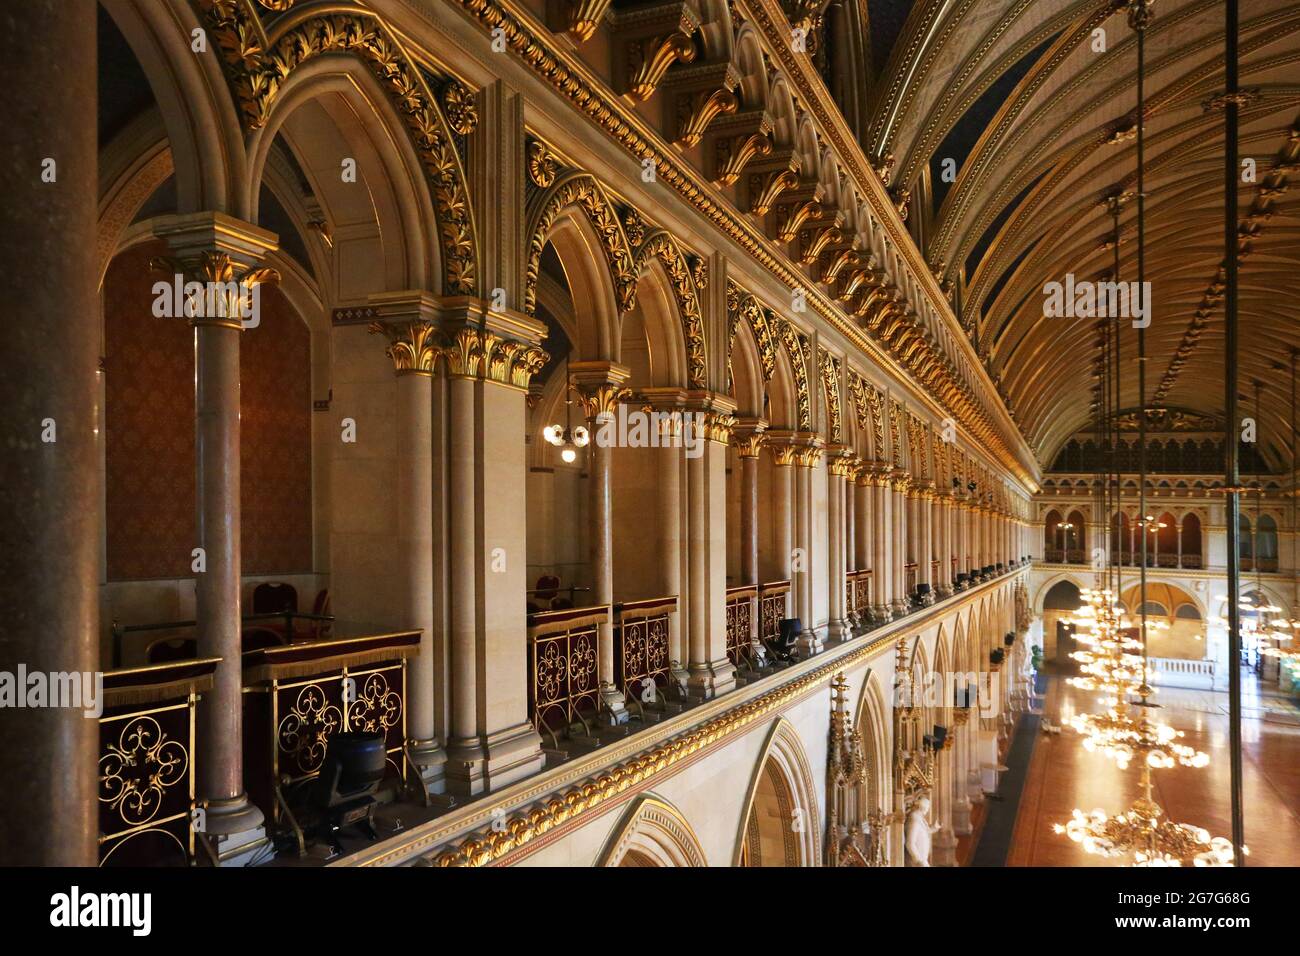 Wien, Rathaus, Festsaal mit Kronleuchter und Festbeleuchtung im historischen Rathaussaal Stock Photo